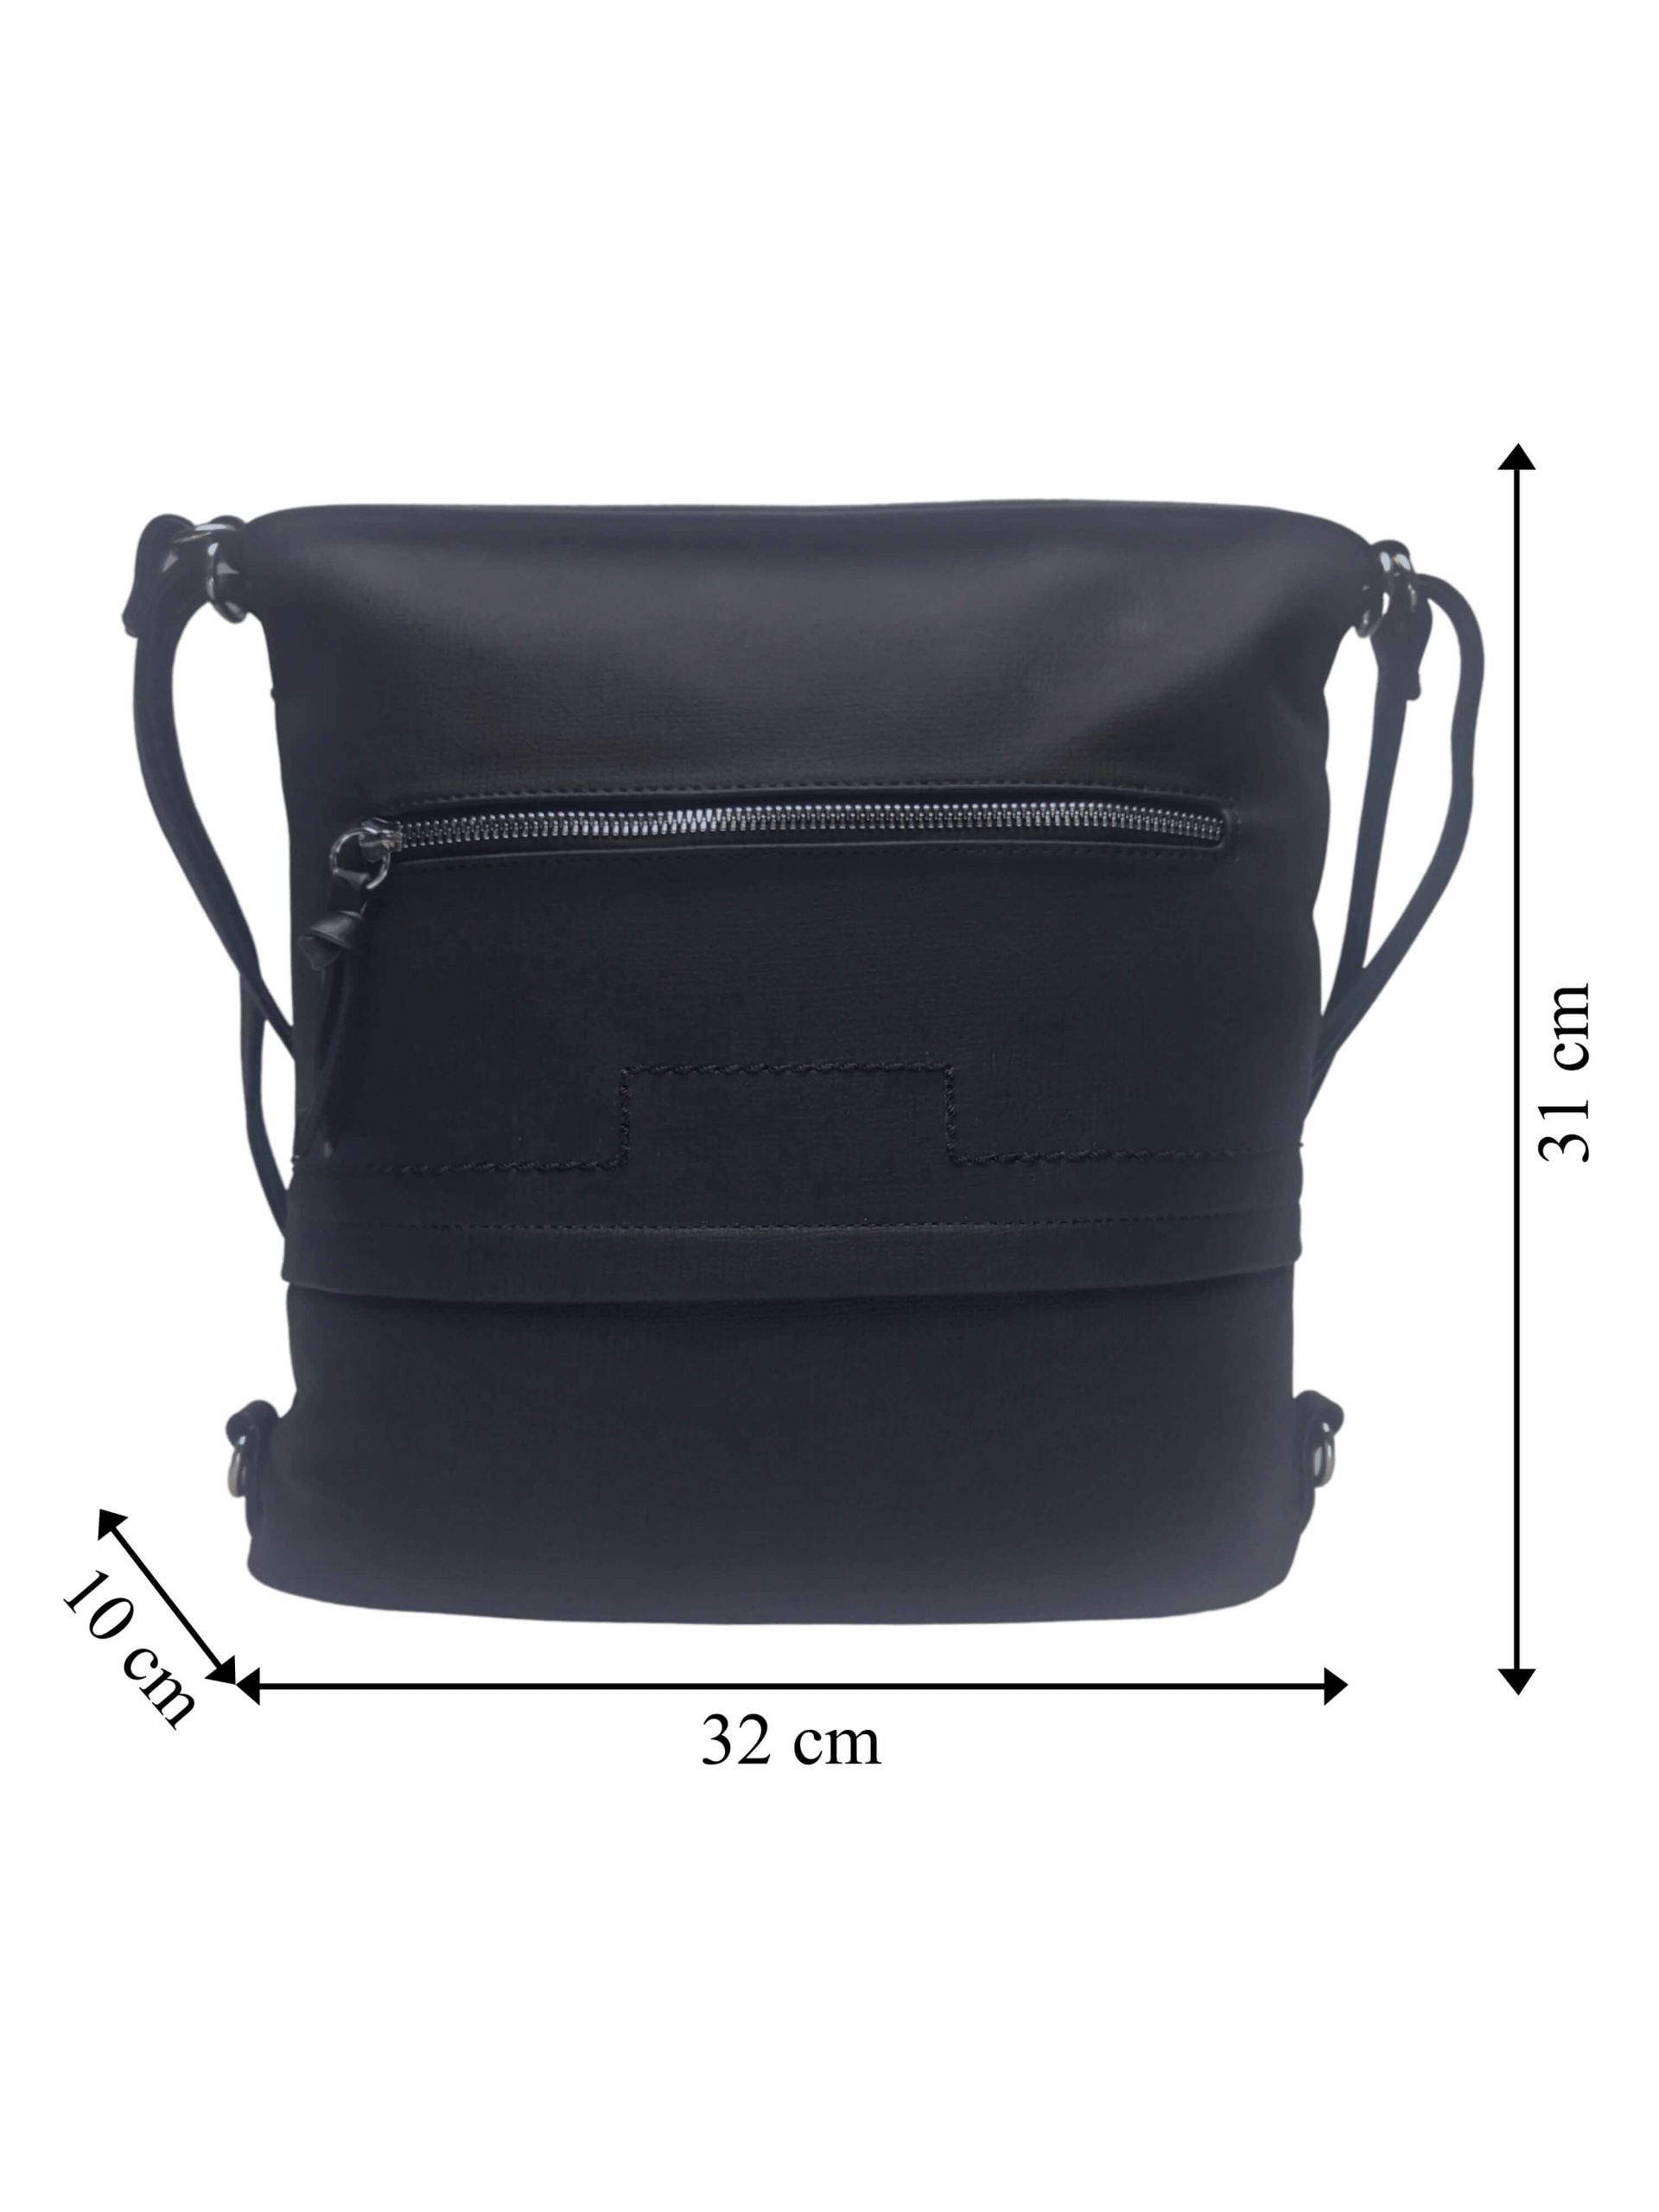 Střední černý kabelko-batoh 2v1 s praktickou kapsou, Tapple, H190062, přední strana kabelko-batohu s rozměry